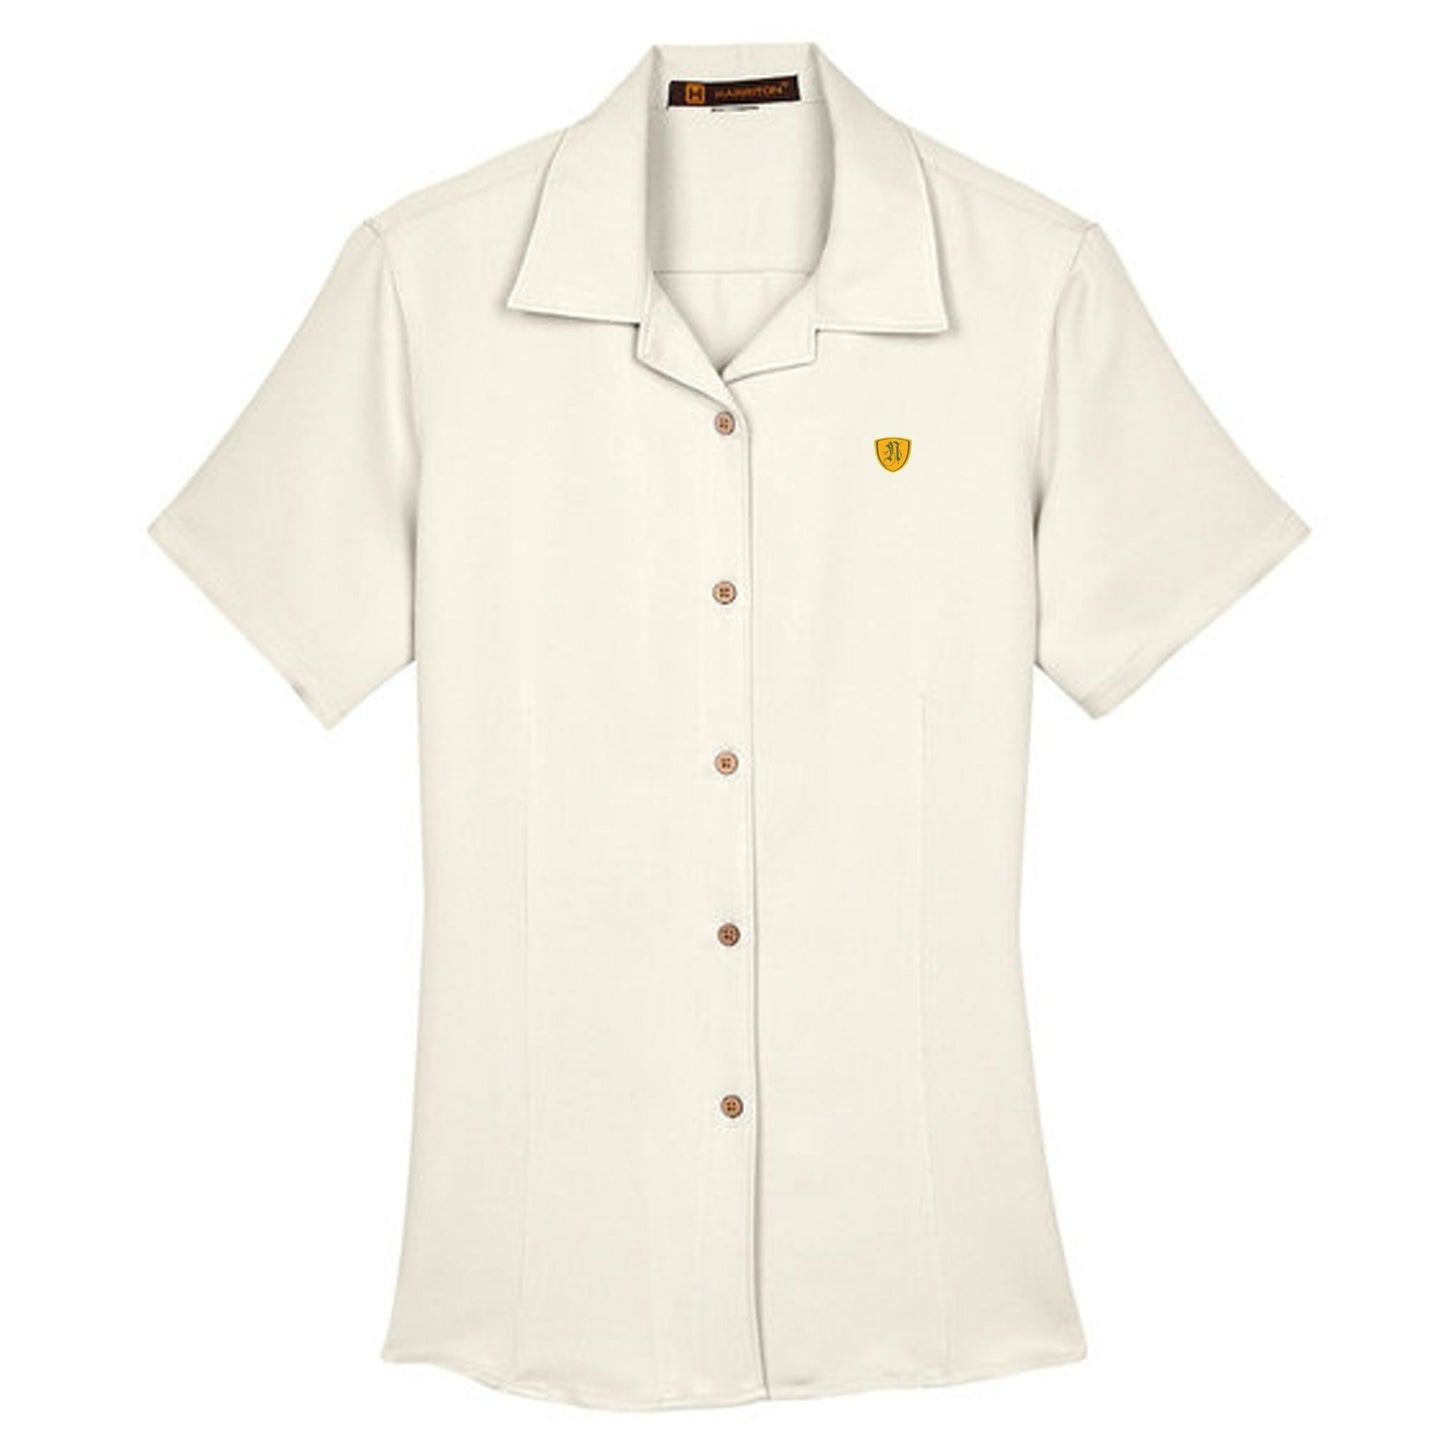 Noblemen - Women's Harriton Golf Shirt